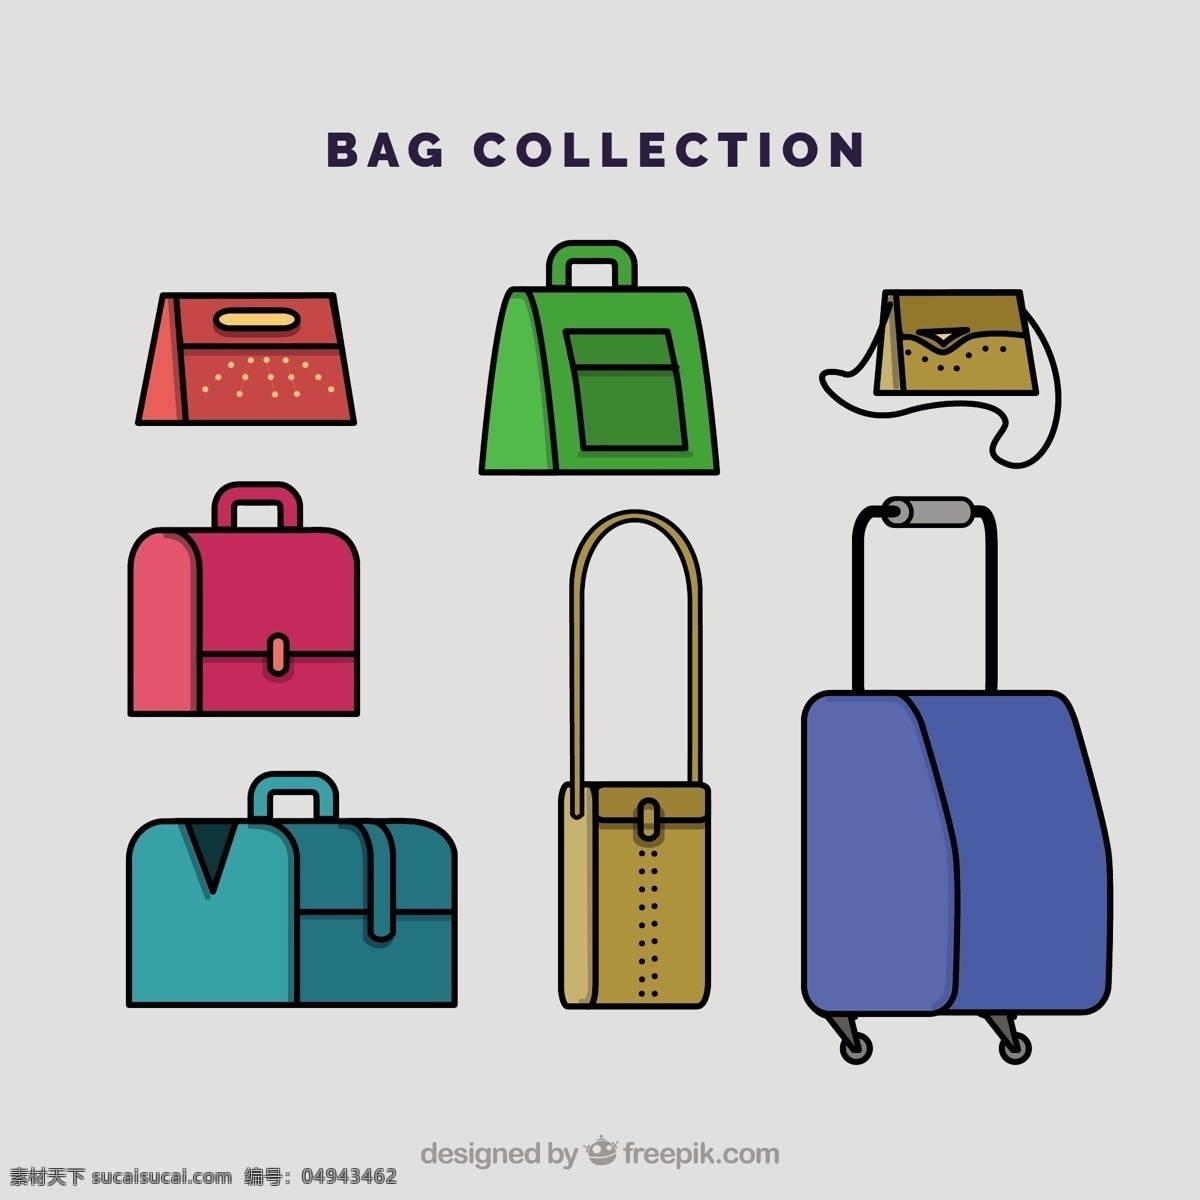 袋式收集 时尚 购物 色彩 箱包 平面 商店 购物袋 平面设计 手提包 收藏 行李 配件